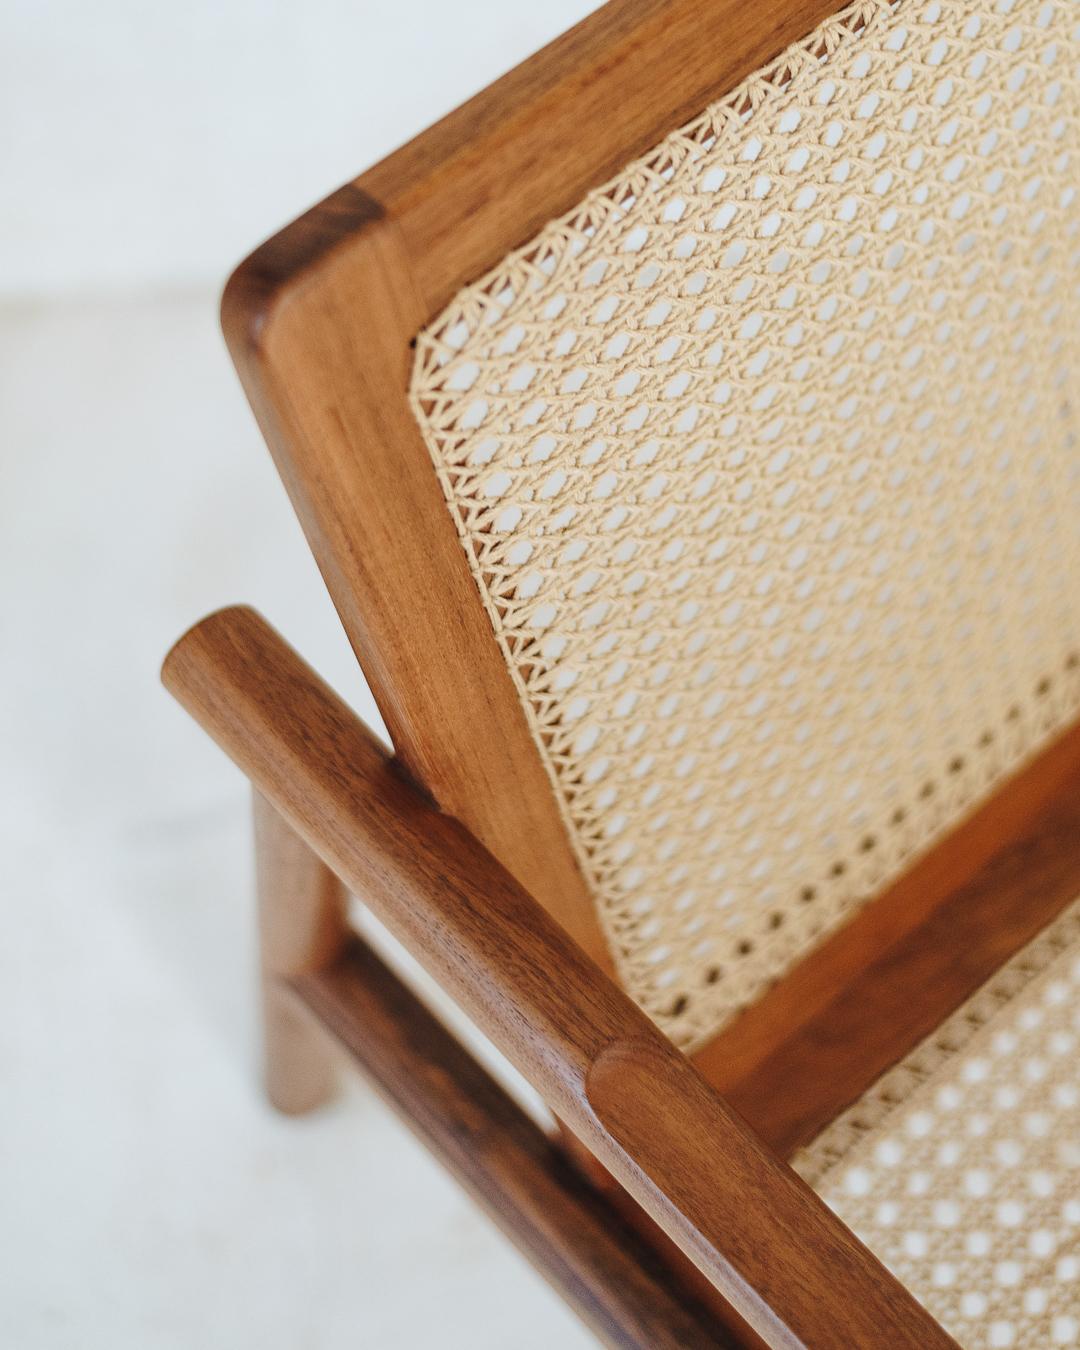 Der Sessel hat eine einfache und sehr leichte Struktur. Seine klaren Linien mit glatten und abgerundeten Kanten verschmelzen mit dem sorgfältigen handgewebten Muster. Bei diesem handgewebten Stoff, der von einer Kunsthandwerkerfamilie aus Bacalar,